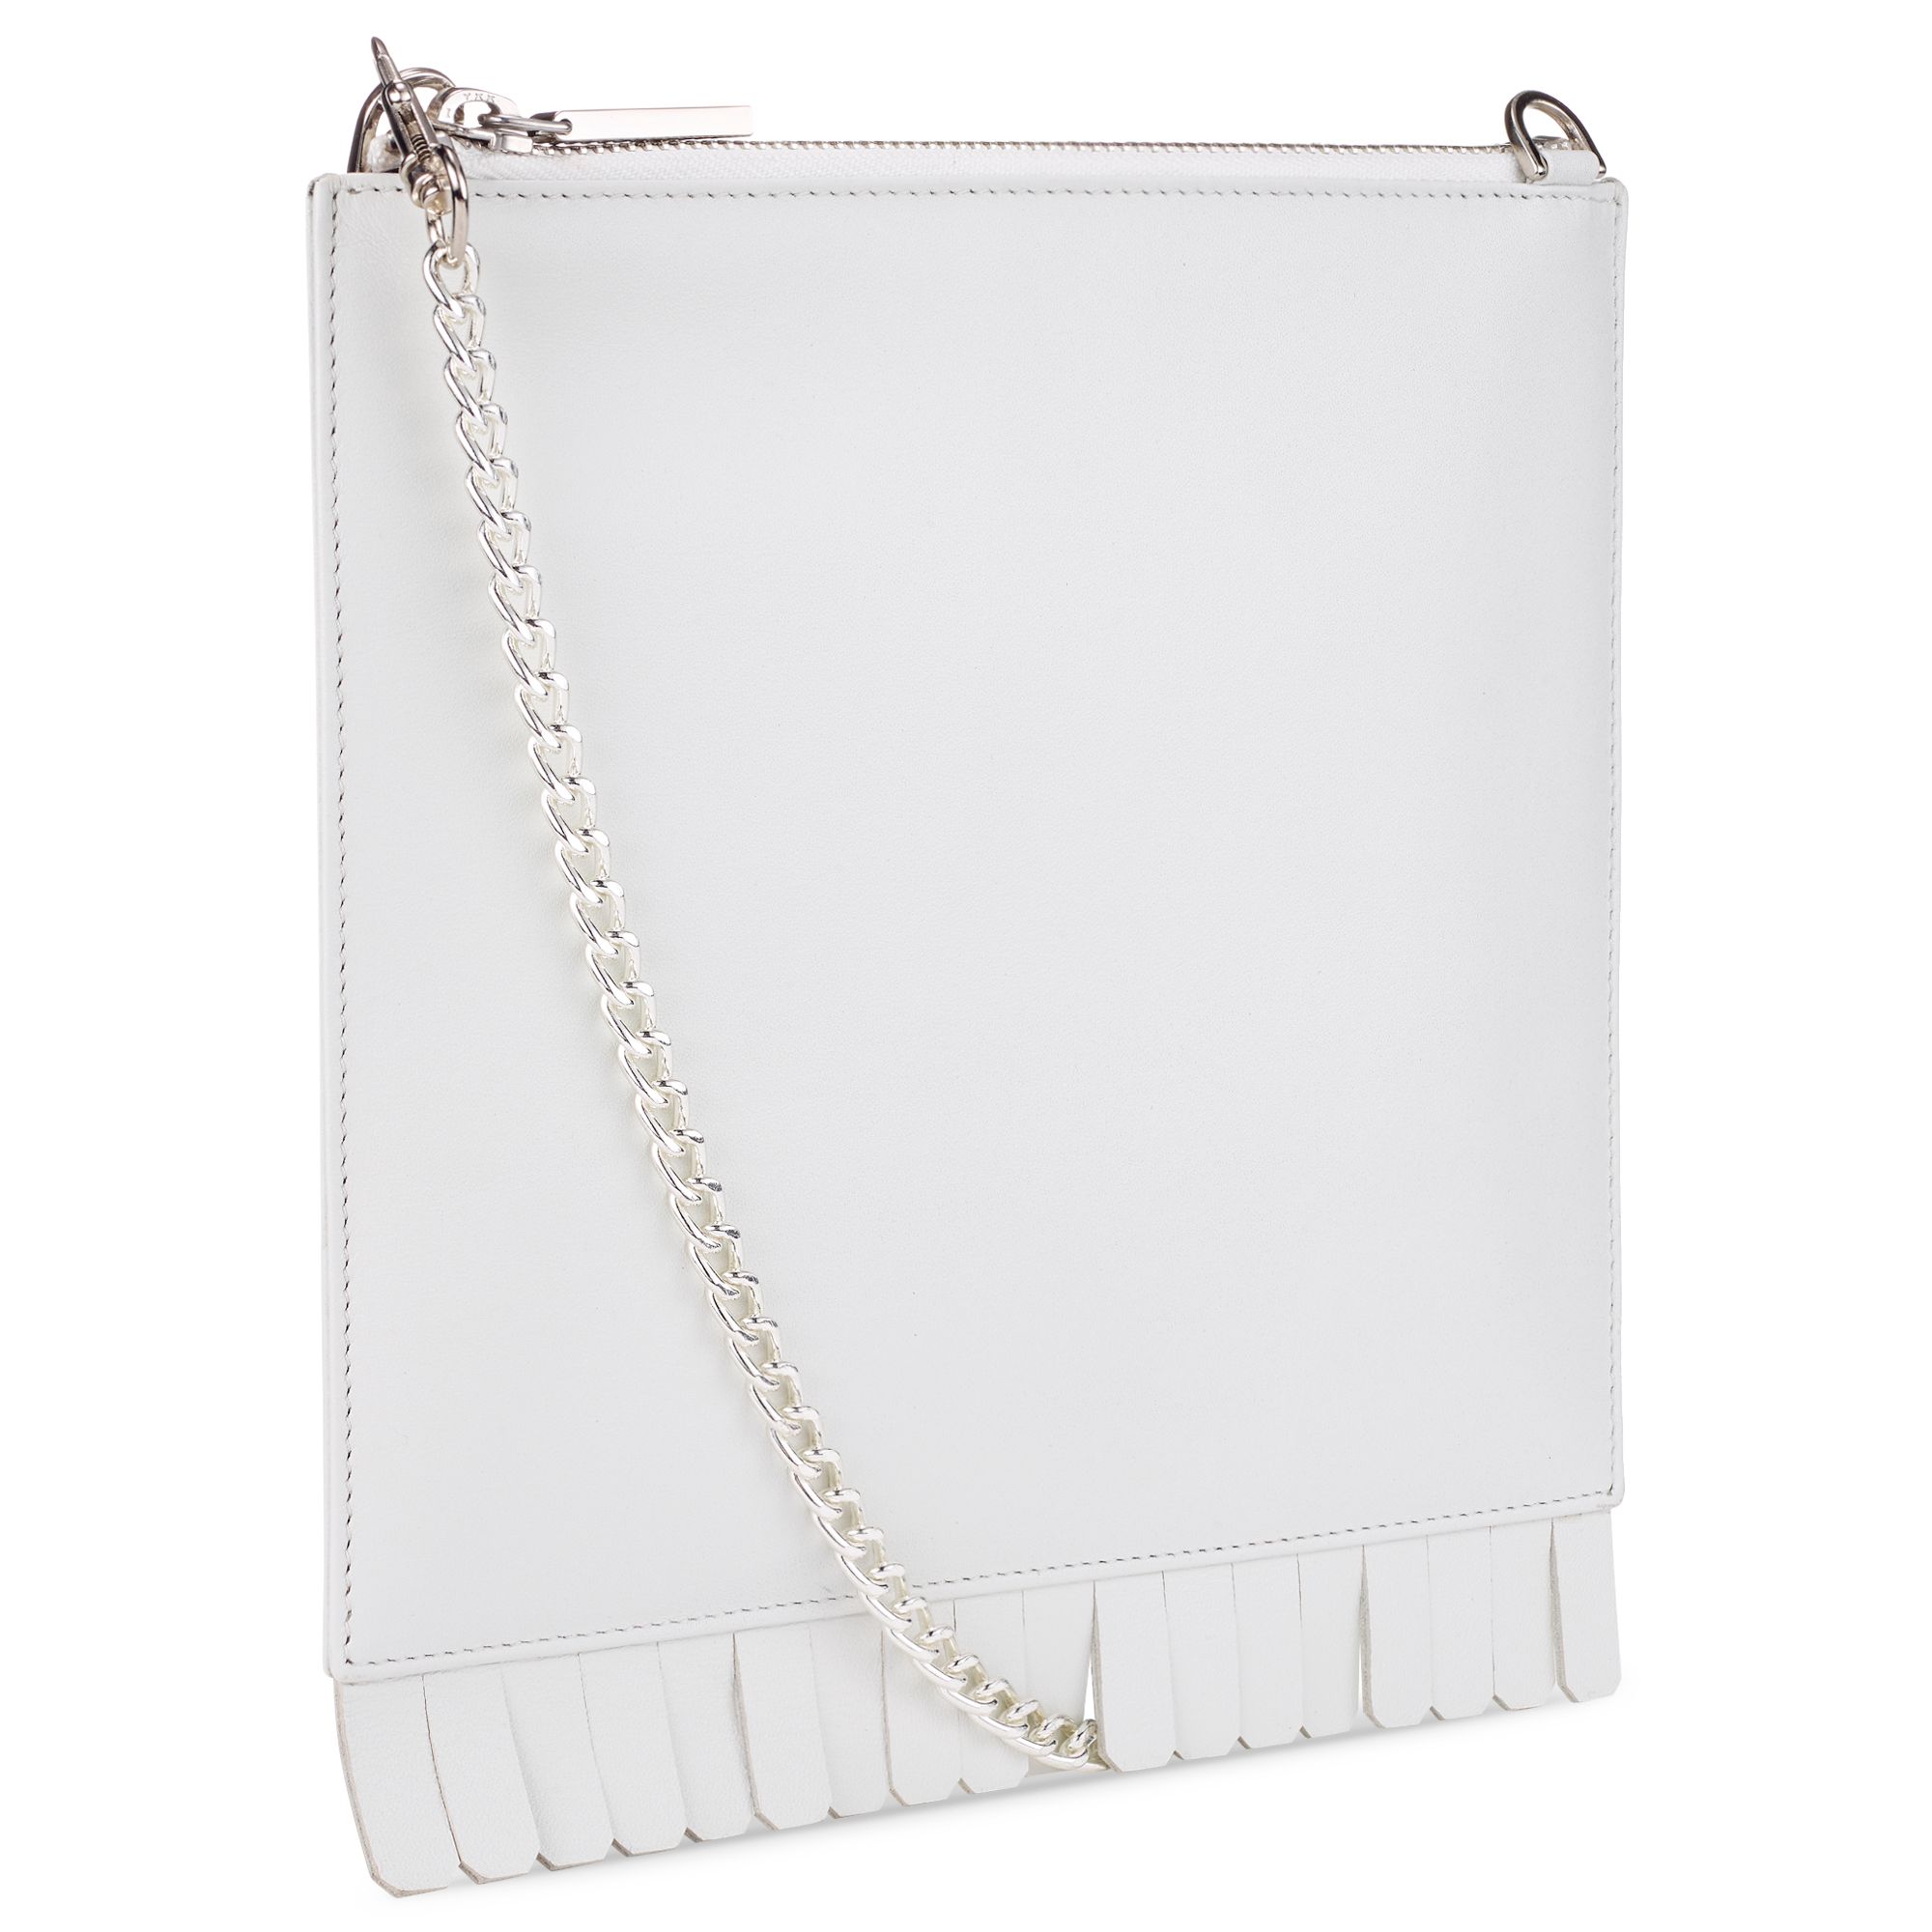 white chain clutch bag